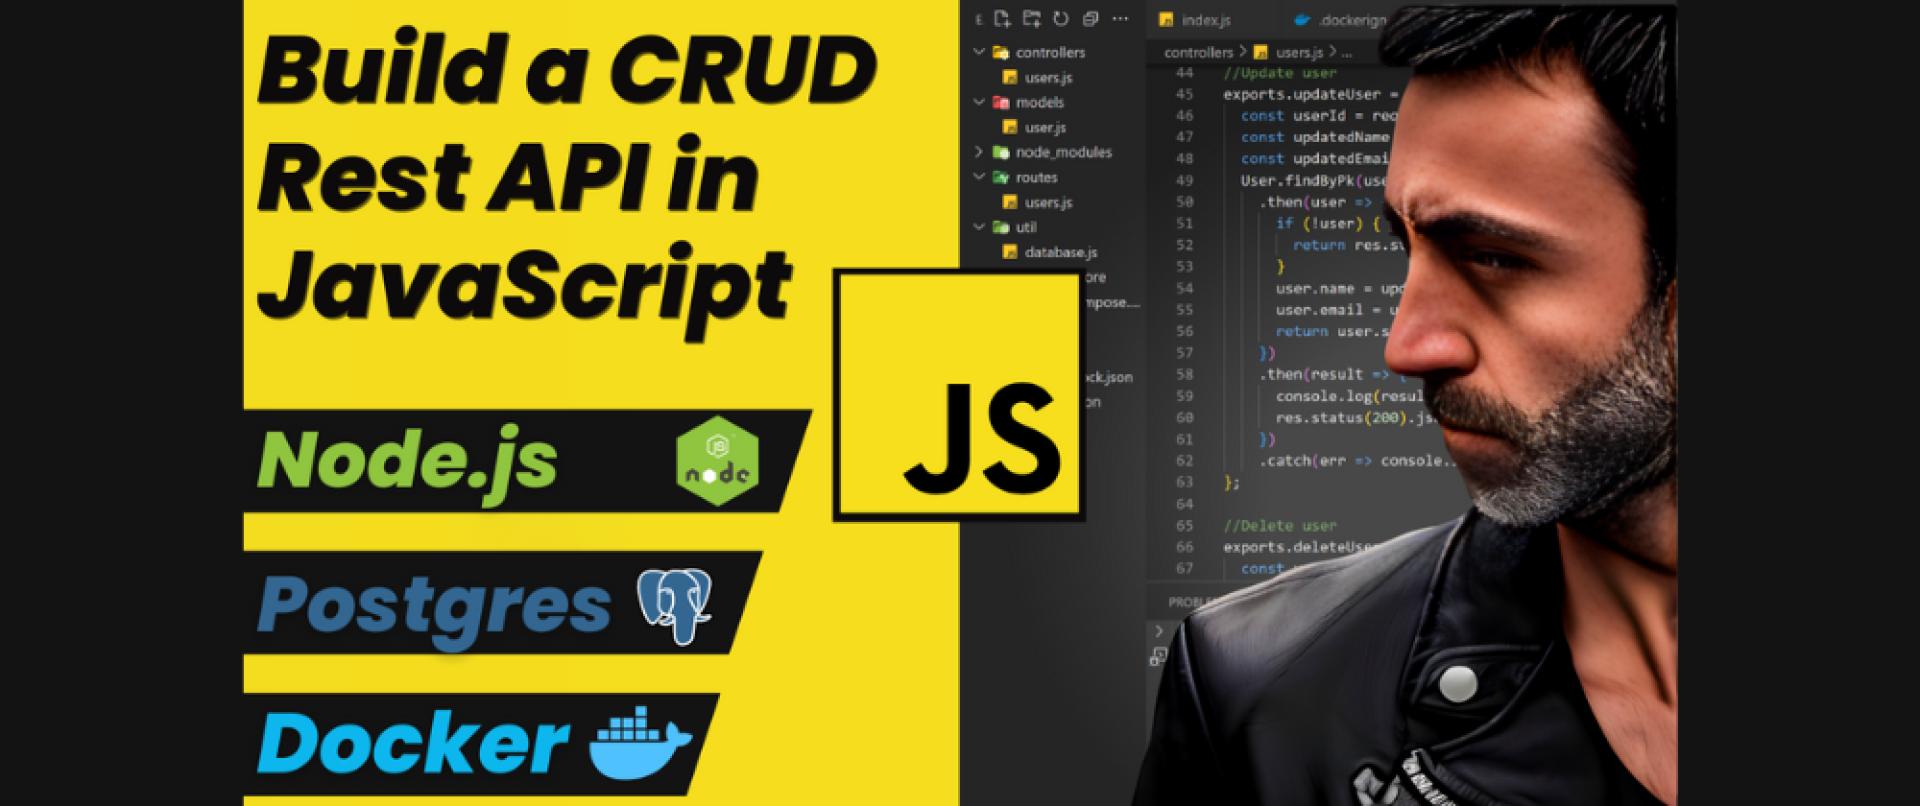 JavaScript CRUD Rest API using Nodejs, Express, Sequelize, Postgres, Docker and Docker 